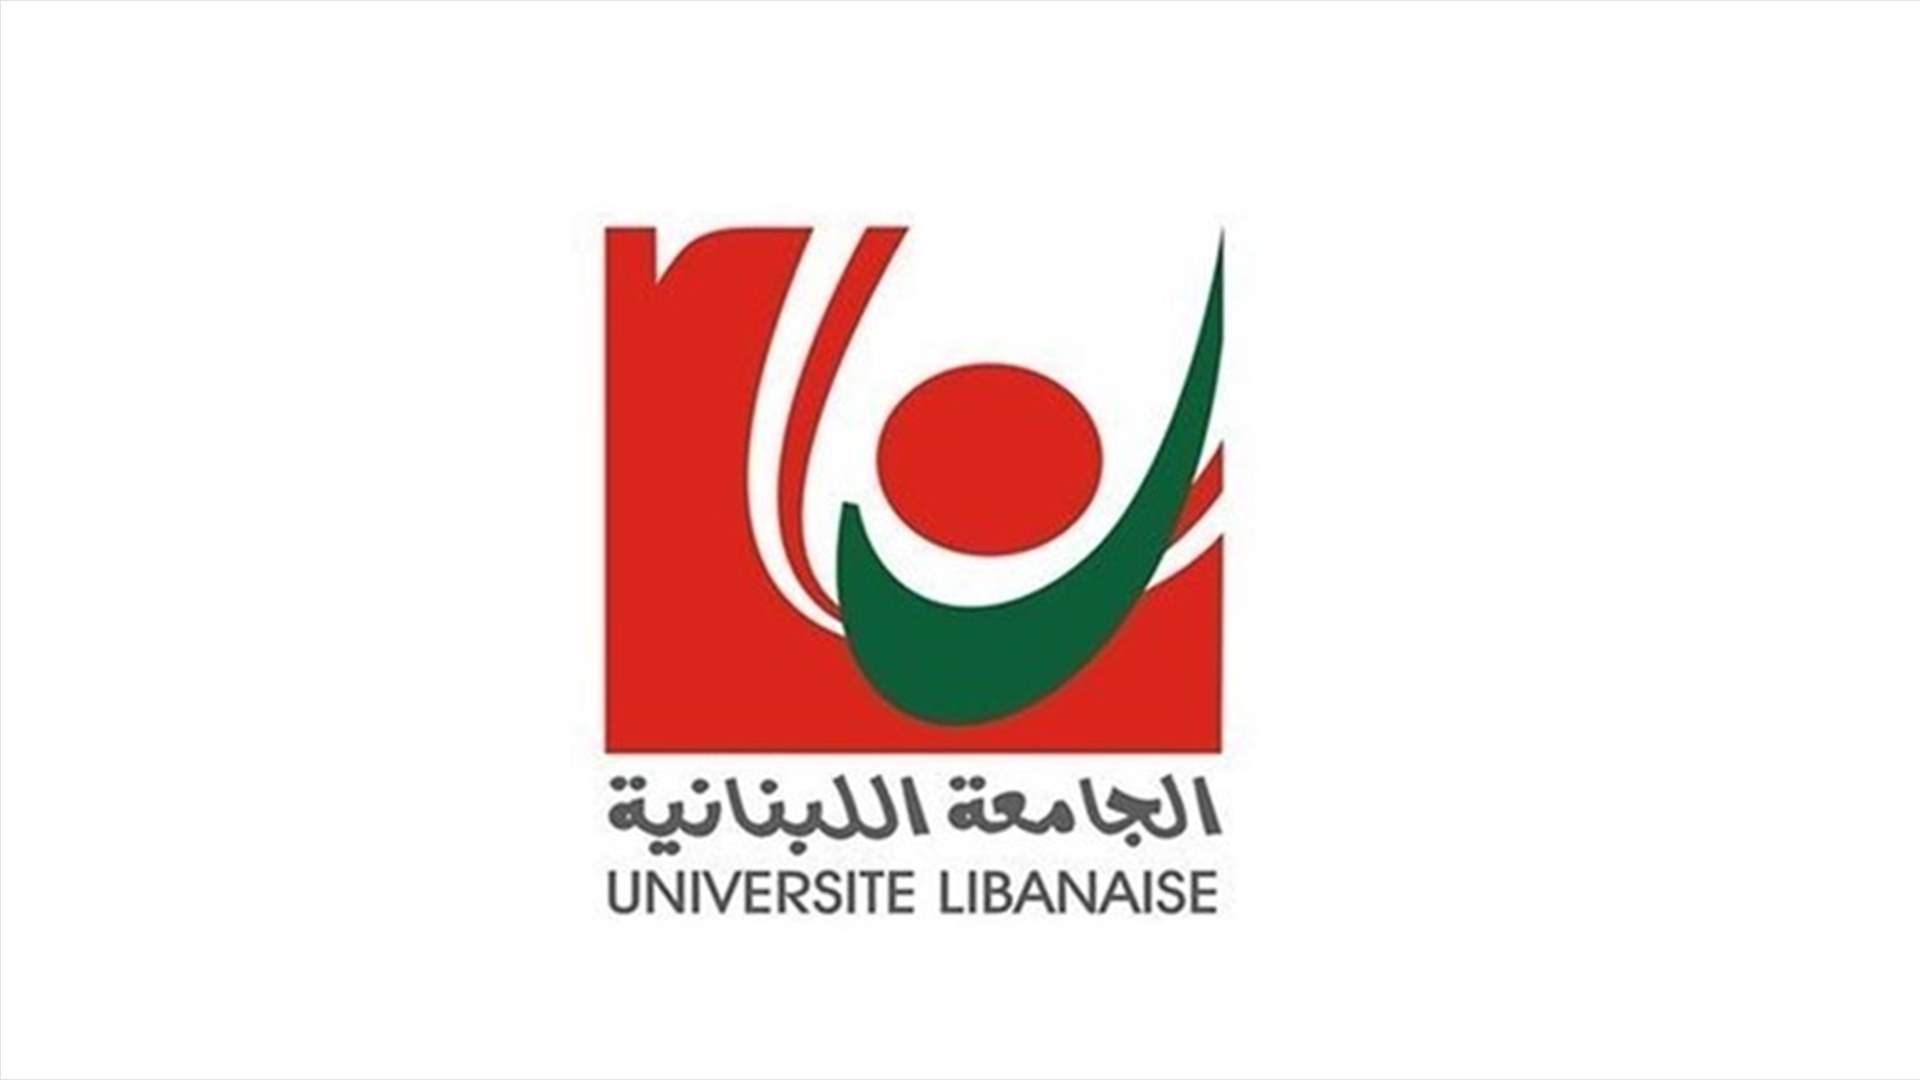 متعاقدو اللبنانية: أقروا ملف تفرغنا انقاذا للجامعة والوطن